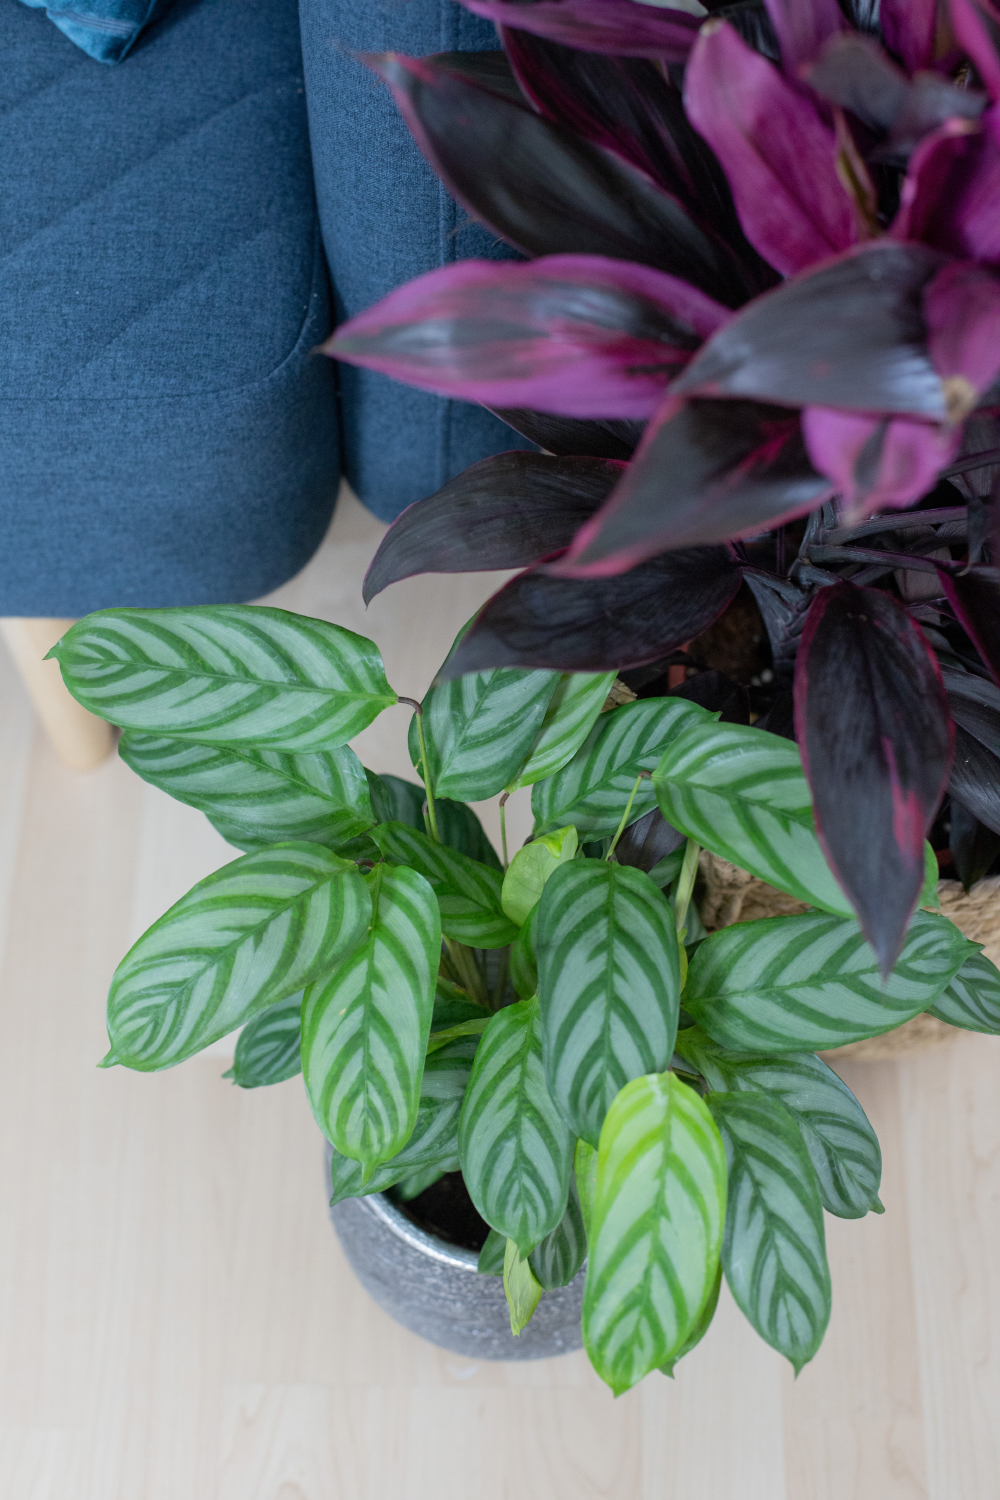 XXL Pflanzen Makeover Wohnzimmer / Home Office + DIY für stylischen Pflanzenhalter